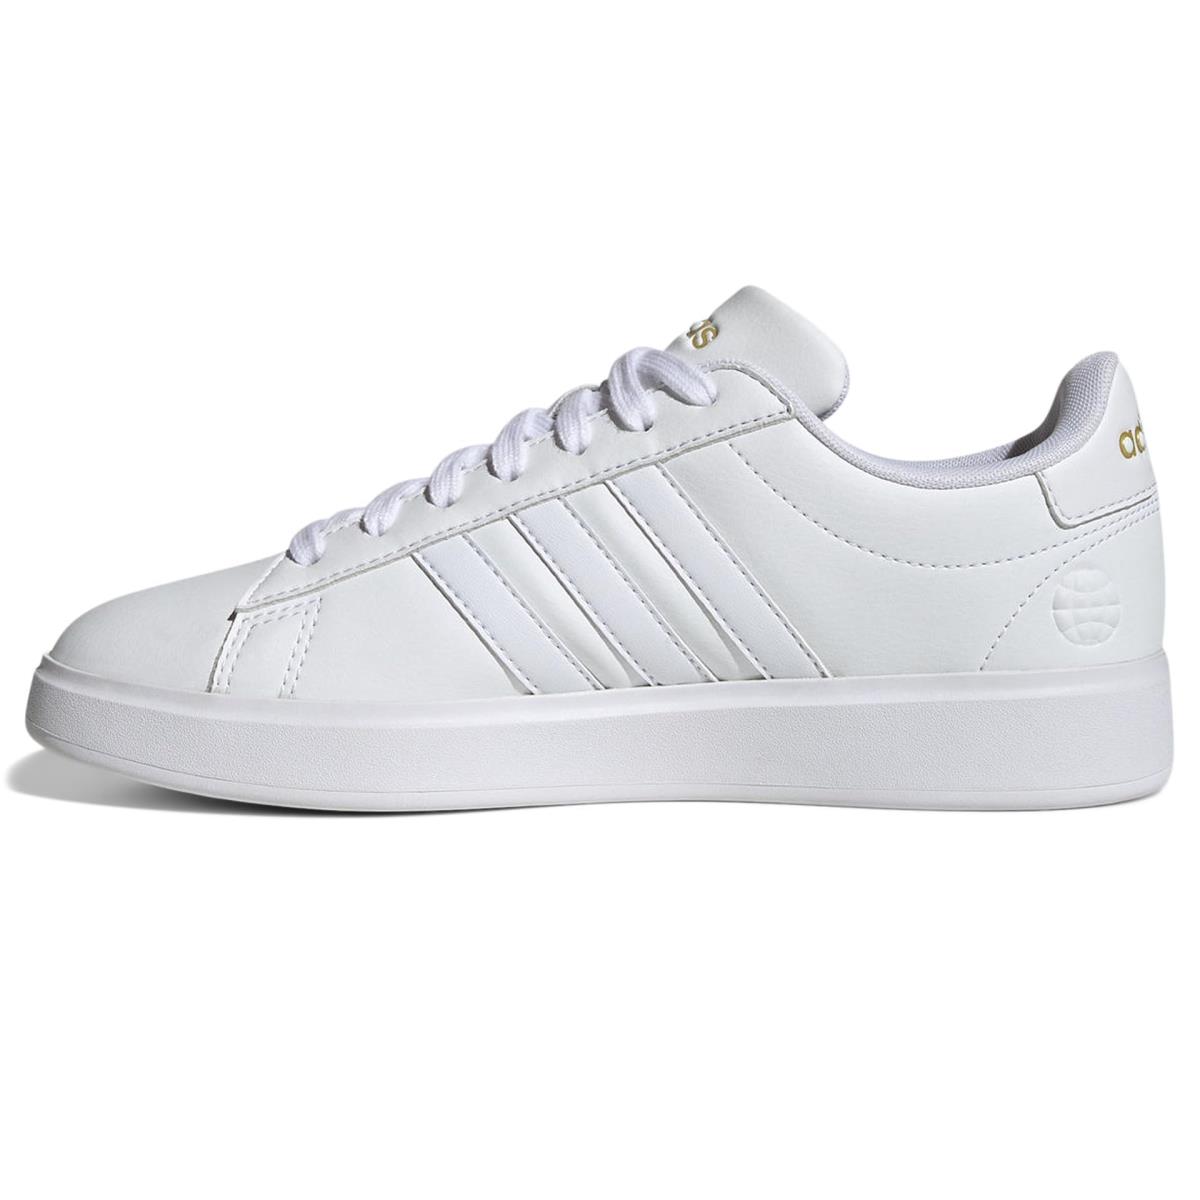 Adidas Women`s Grand Court 2.0 Tennis Shoe White/White/Gold Metallic